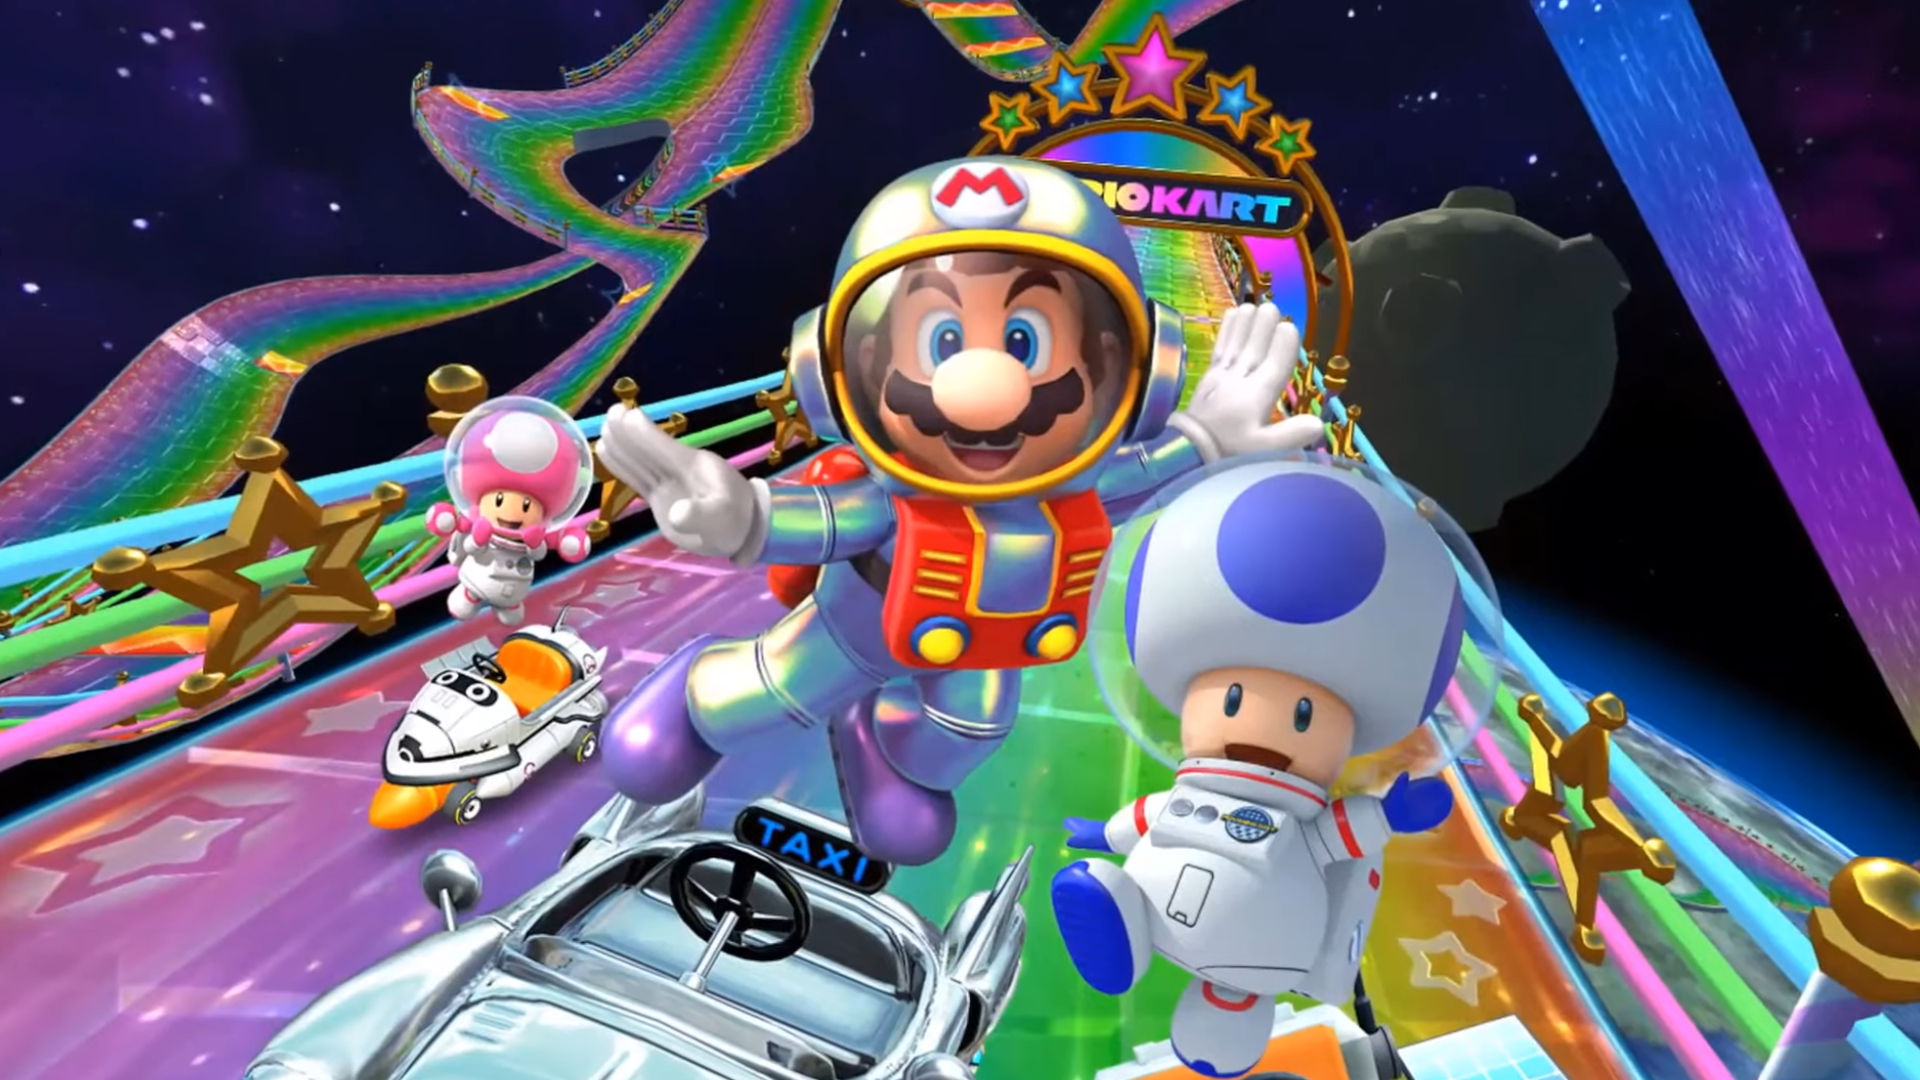 Mario Kart Tour - New Year's Tour Trailer 